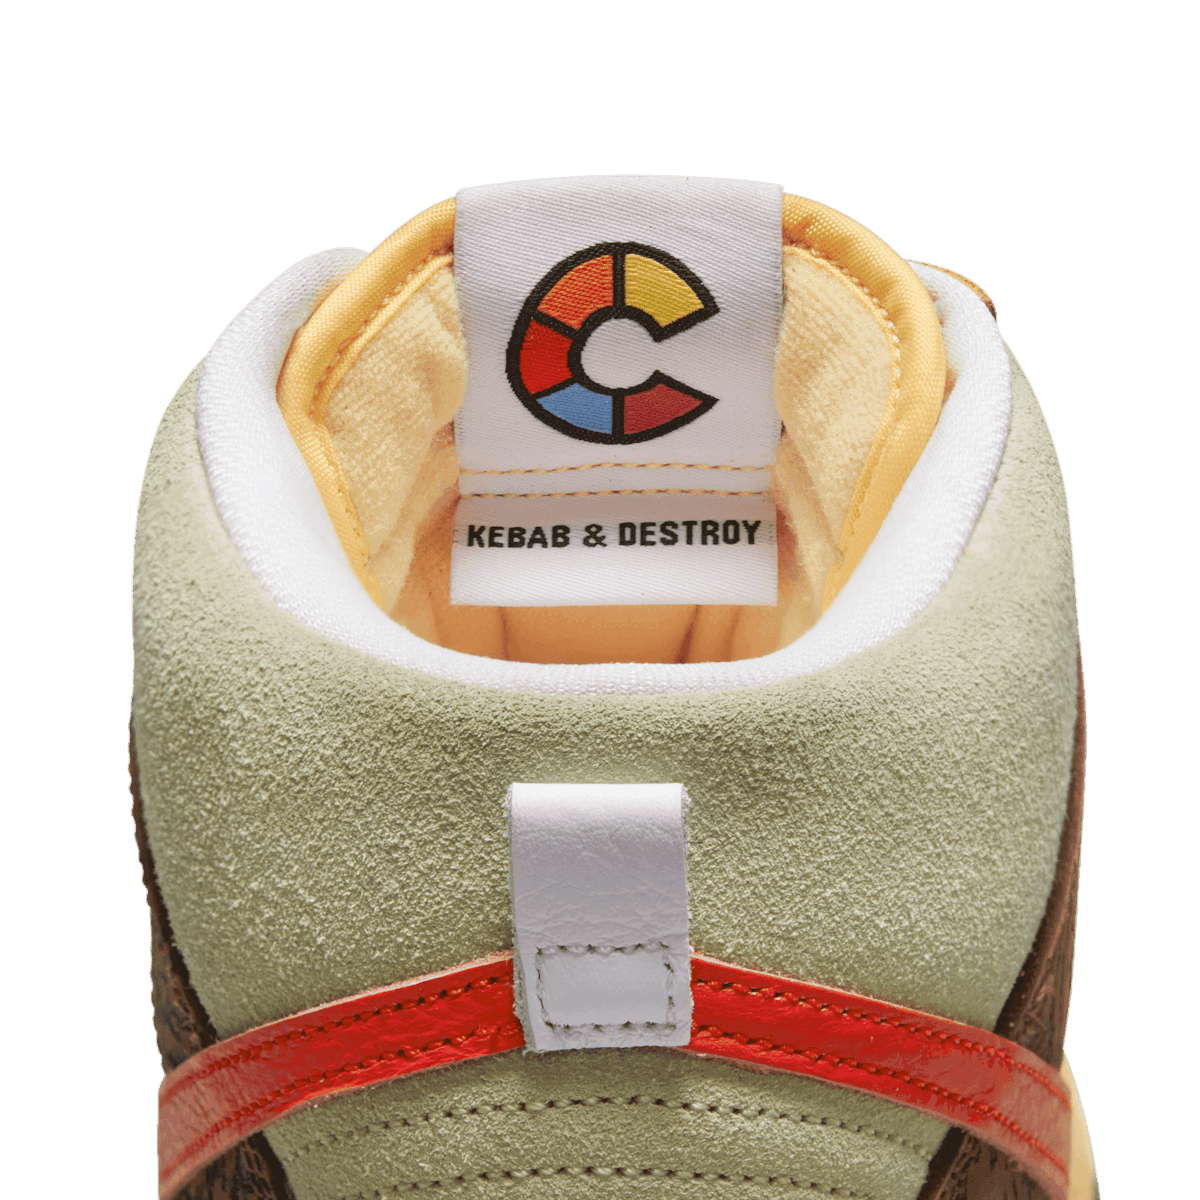 Nike Color Skates SB Dunk High Kebab And Destroy Angle 7